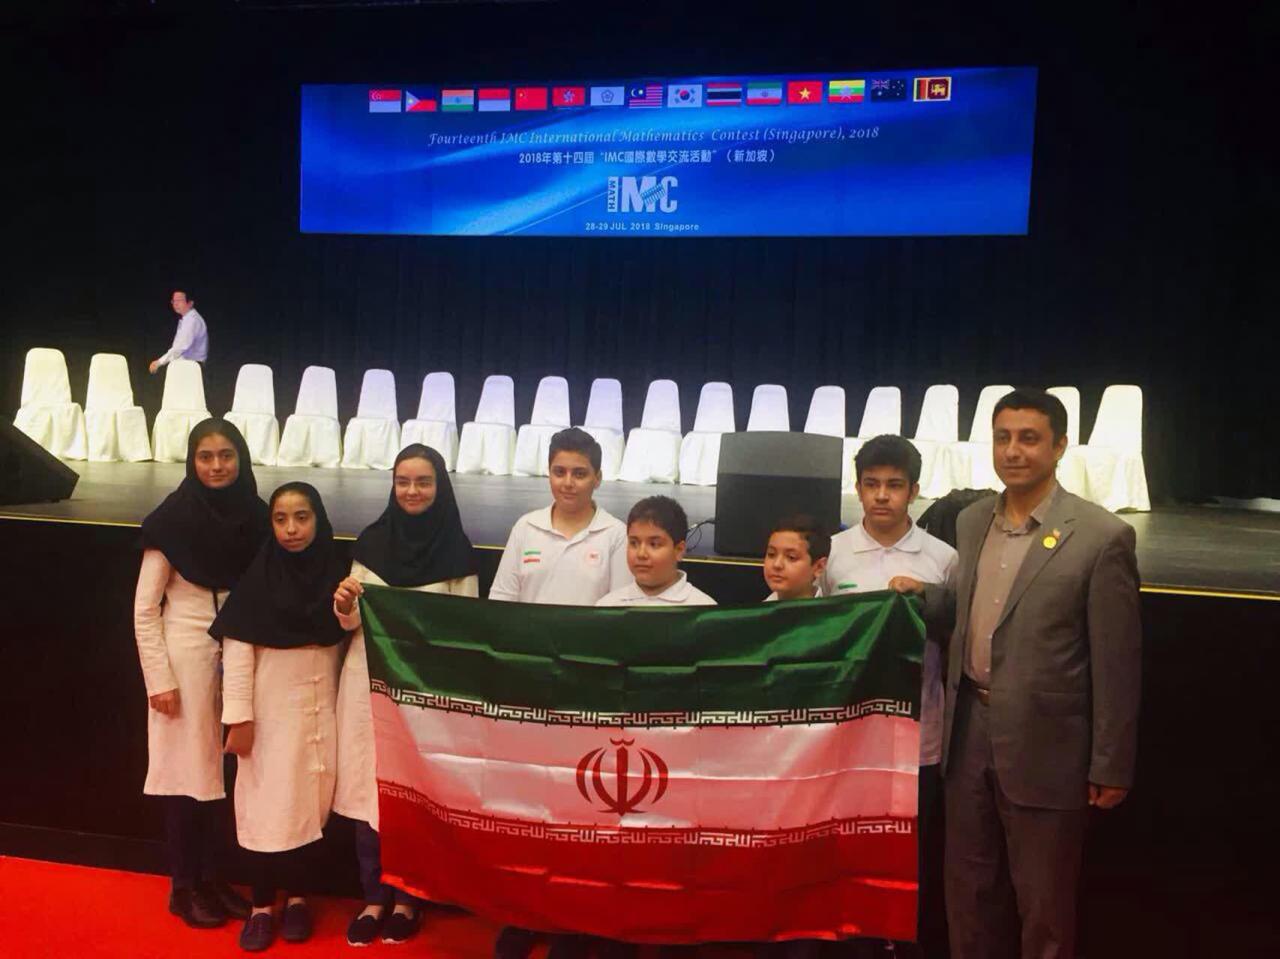 کسب مدال های طلا و برنز در مسابقات جهانی ریاضی IMC Union 2018 توسط عزیزان فرزانگان 2 